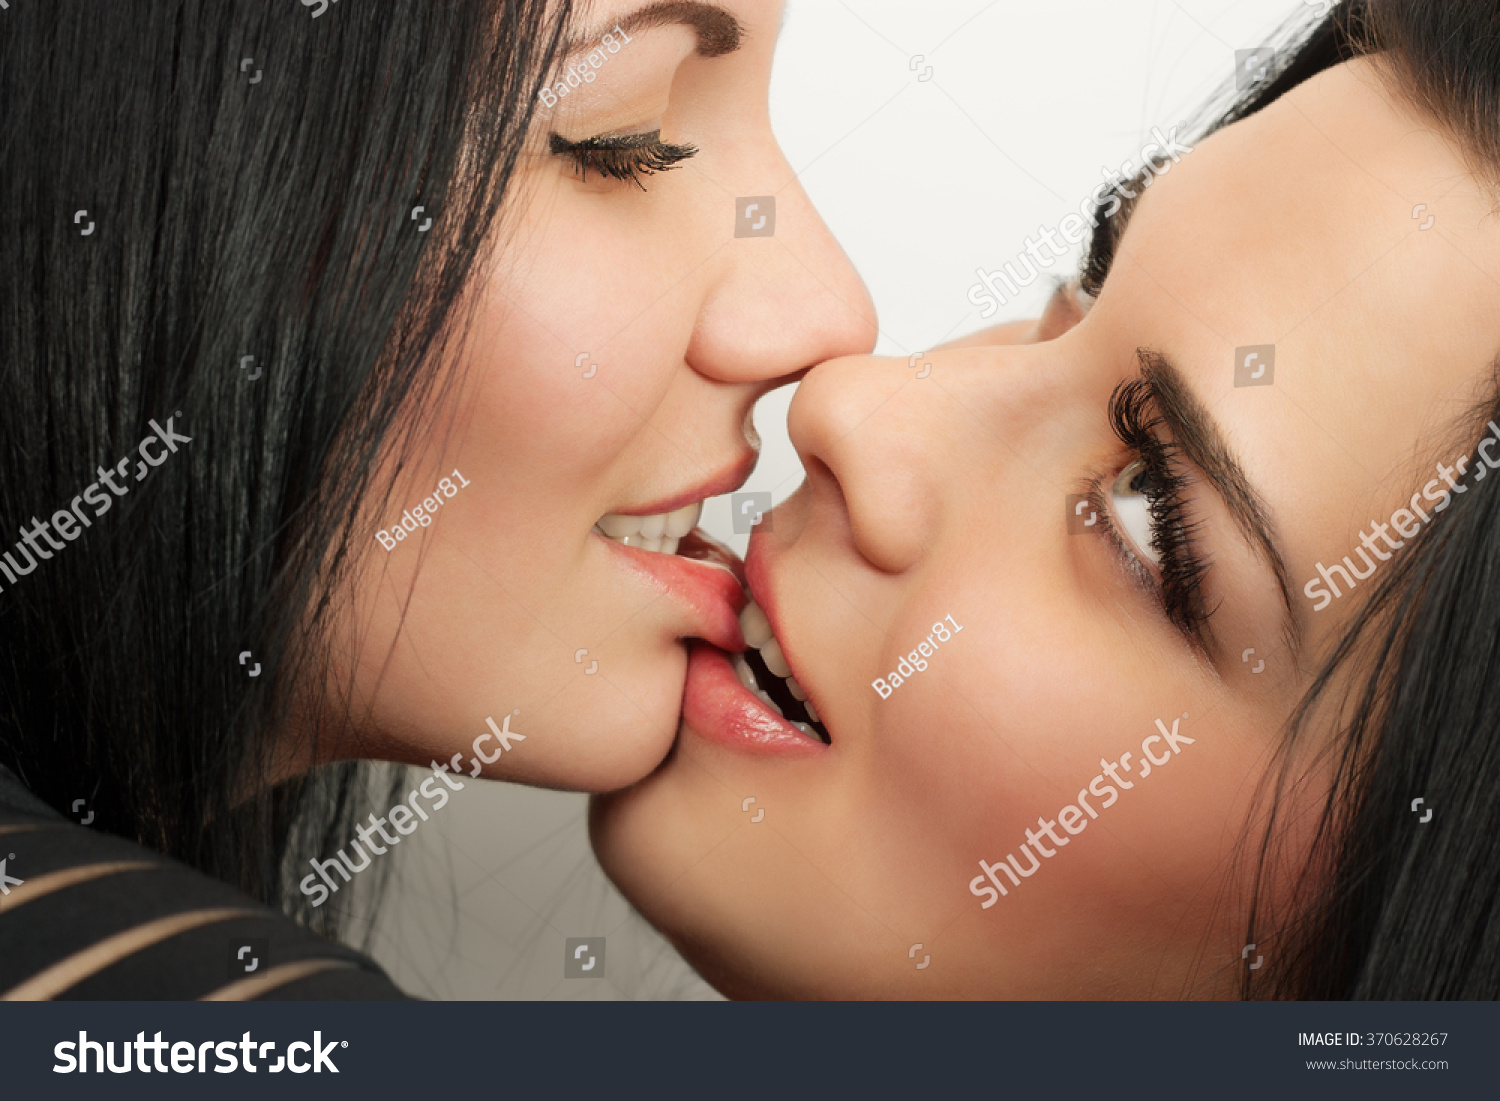 Сексуальная лесбиянка лижет киску своей подружке после душа.